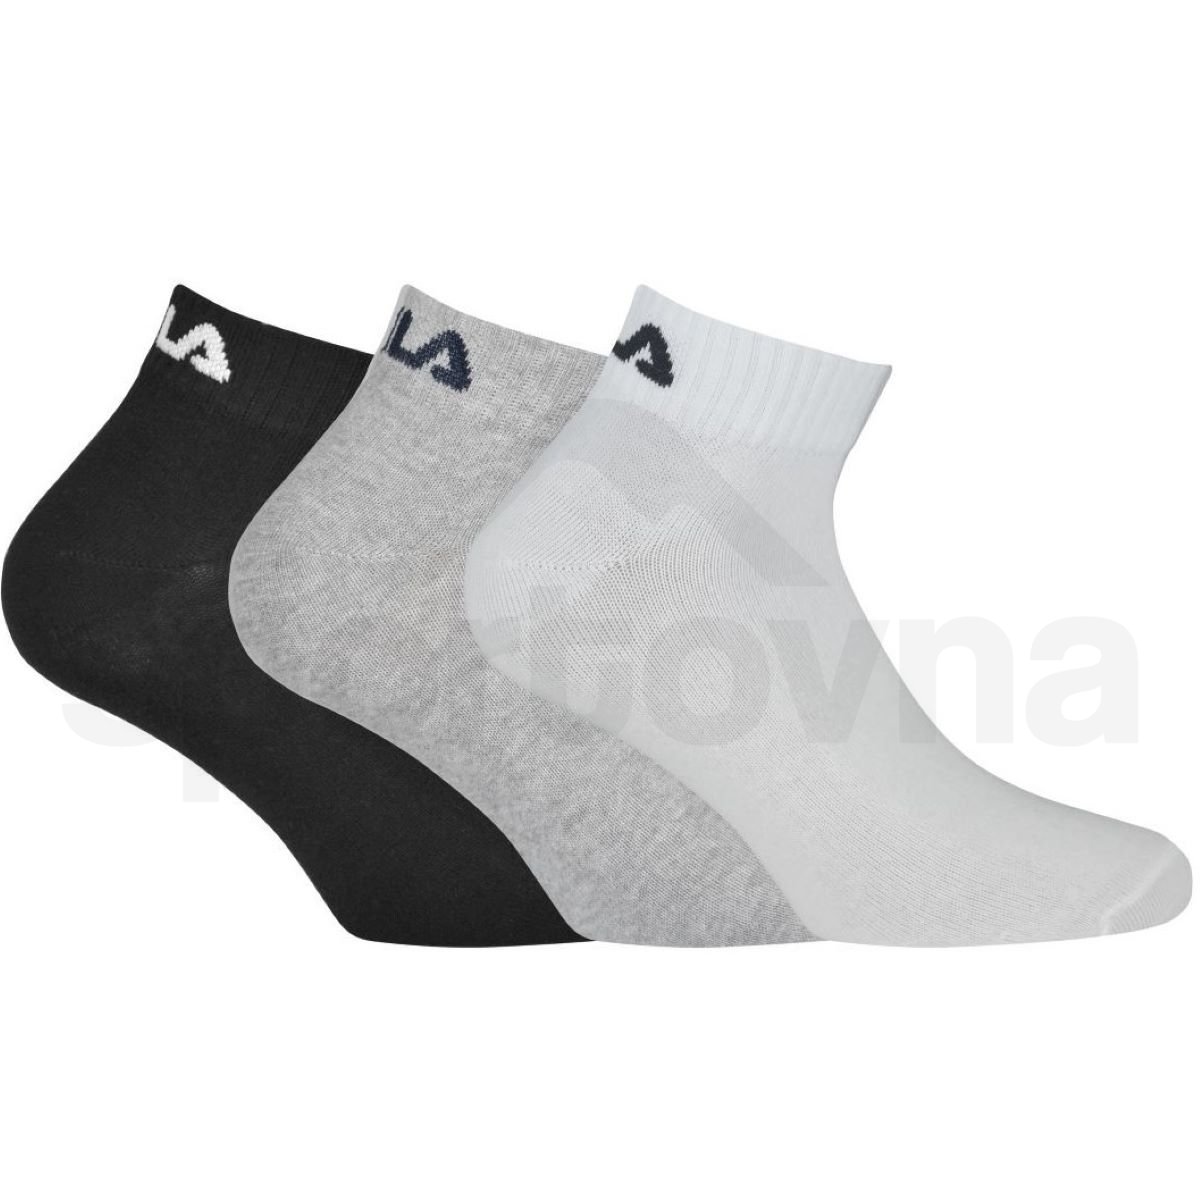 Ponožky Fila Quarter Plain 3 Pack - černá/šedá/bílá